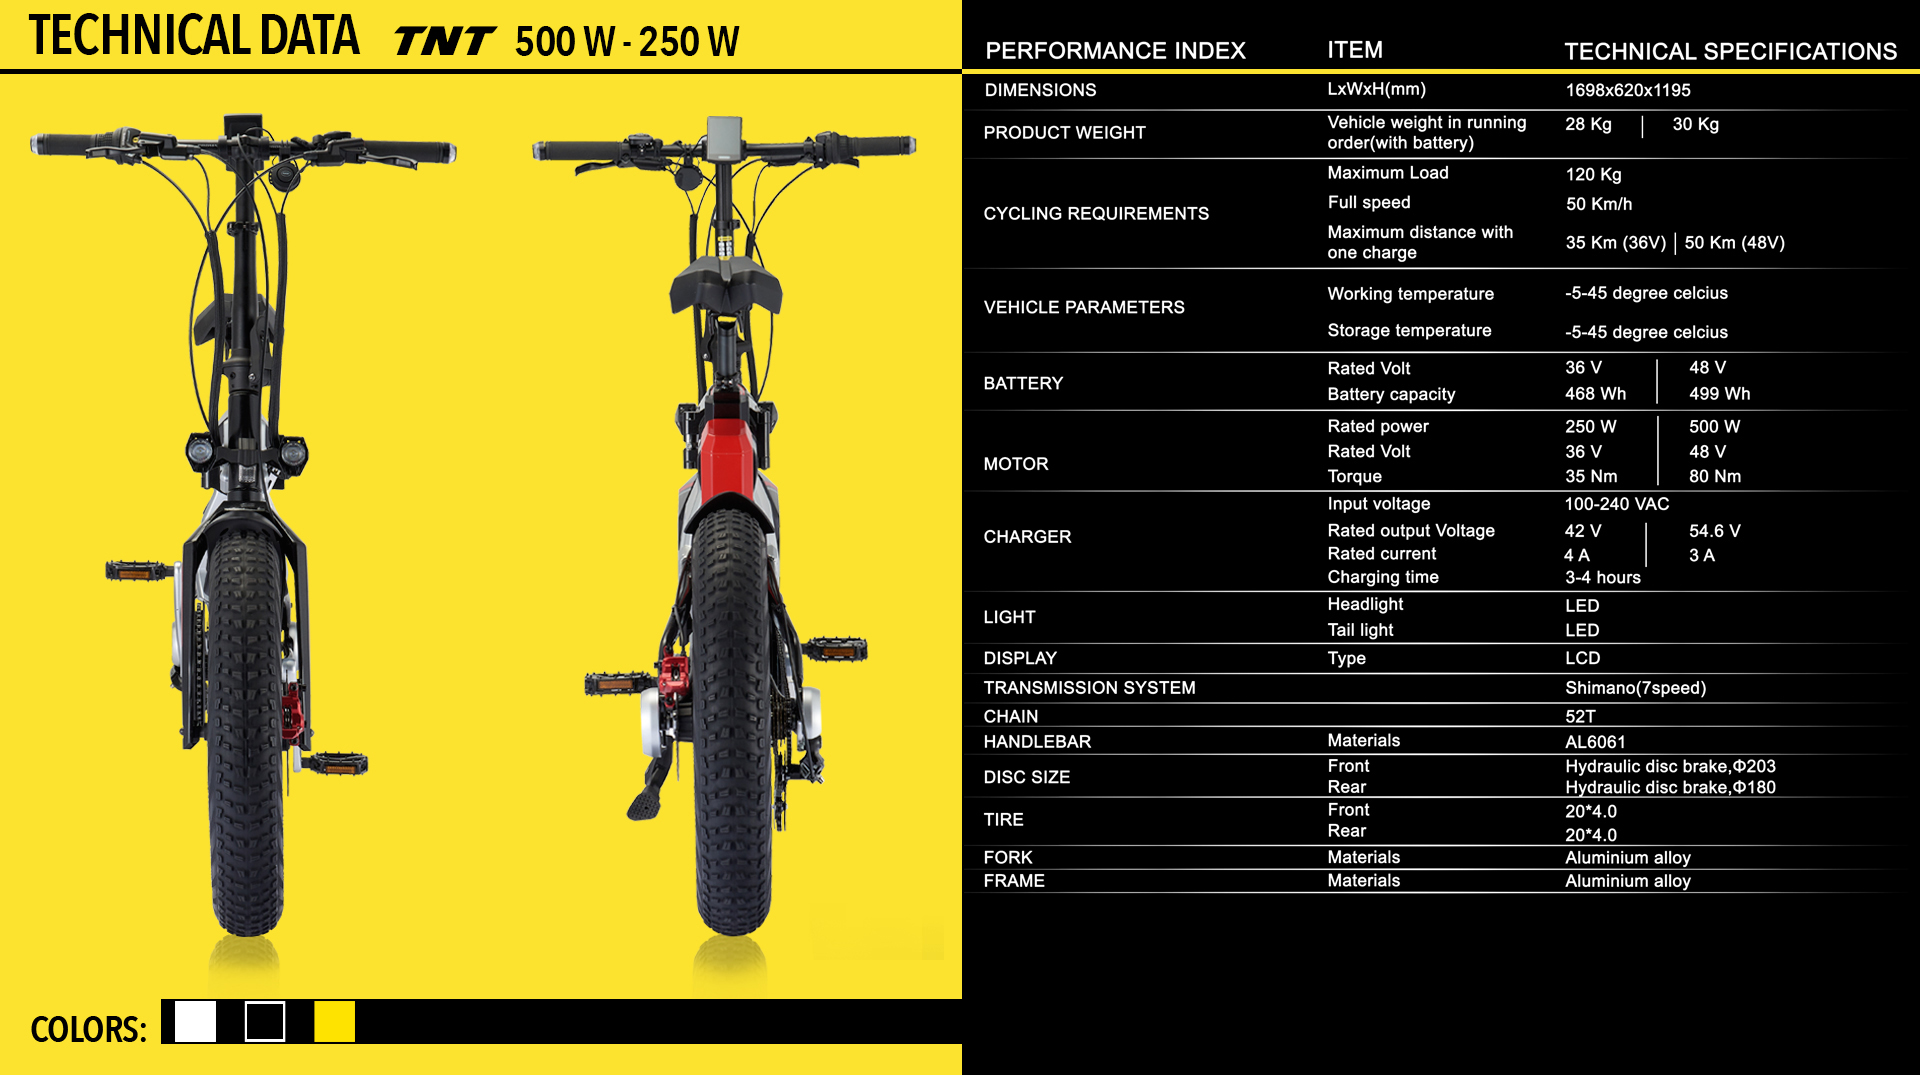 TNT Velocifero electric bike design 500W